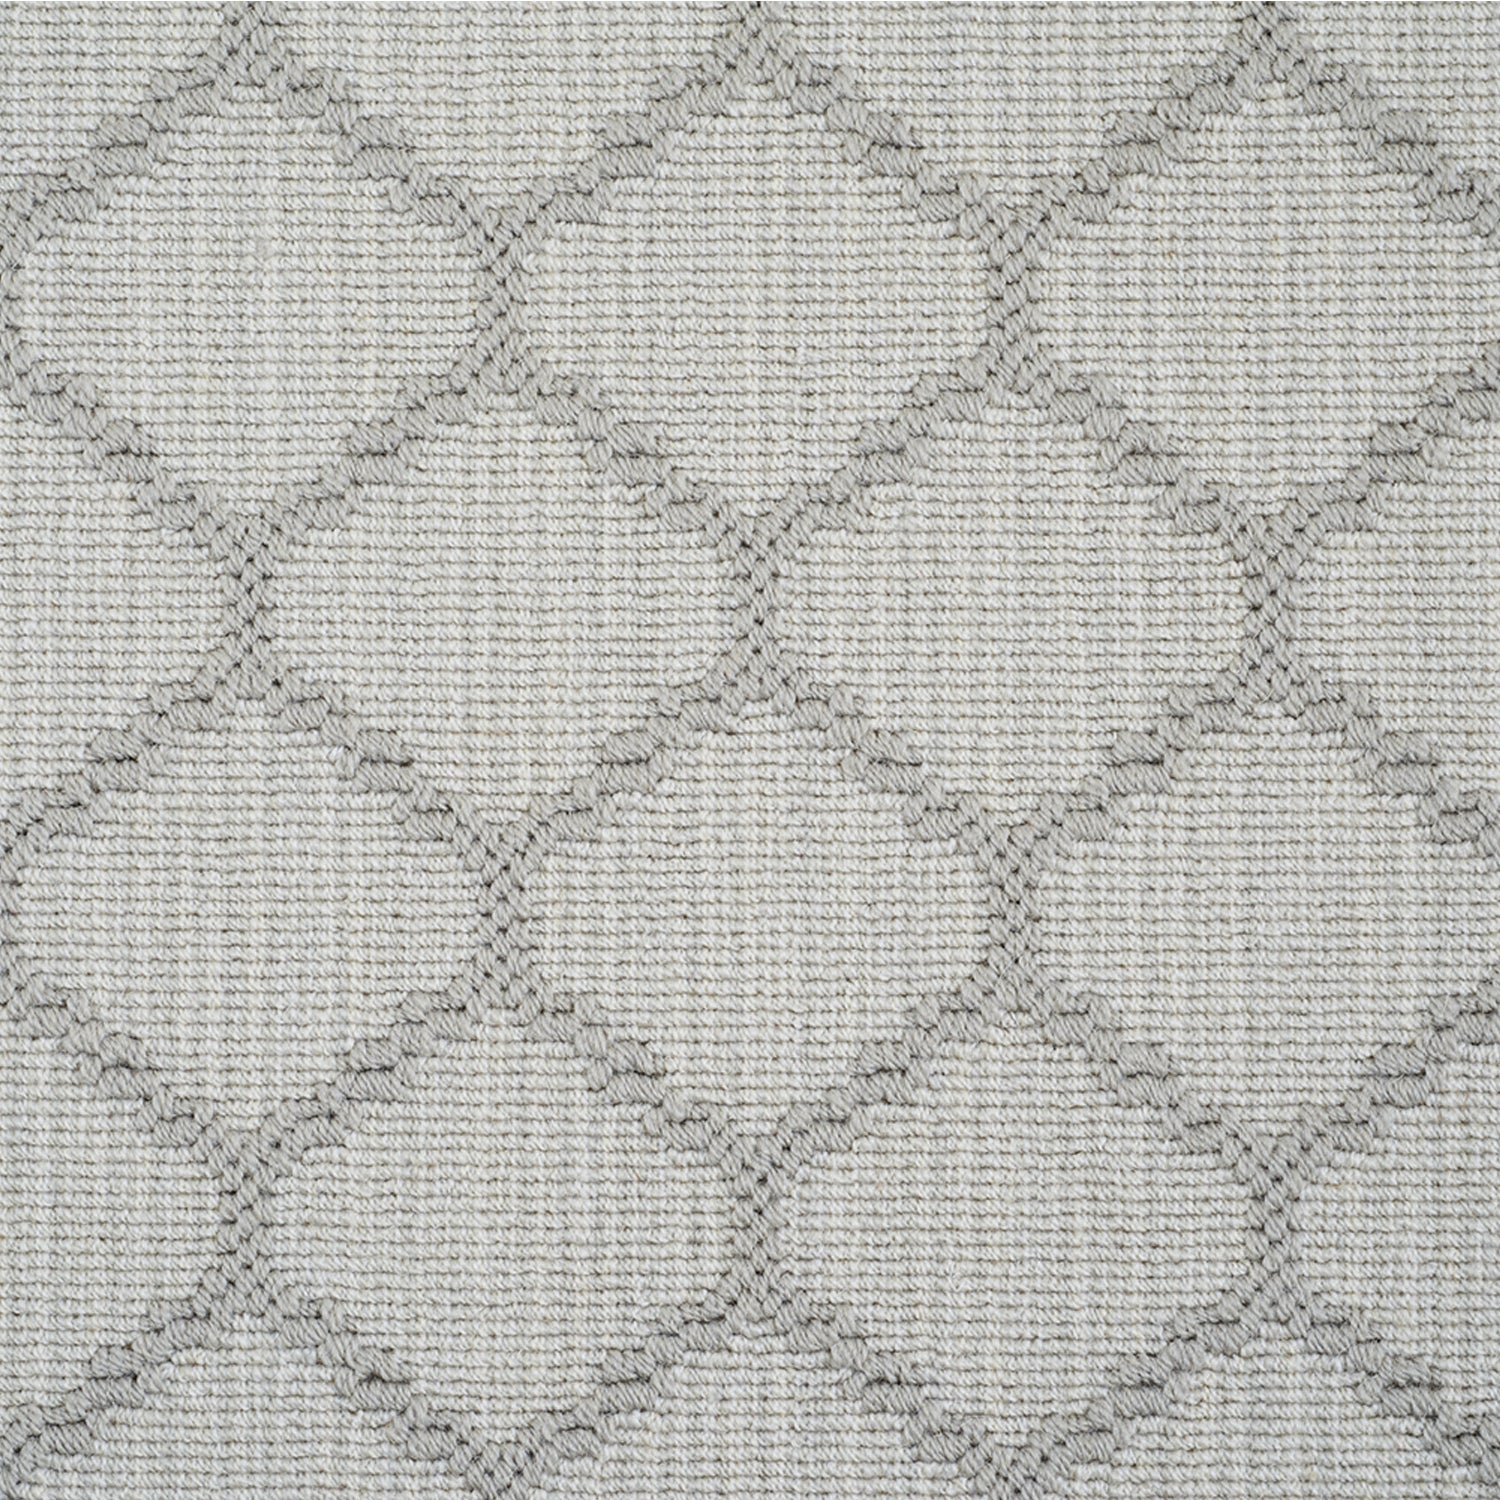 Wool-blend broadloom carpet swatch in a chunky lattice weave in gray on a mottled silver field.